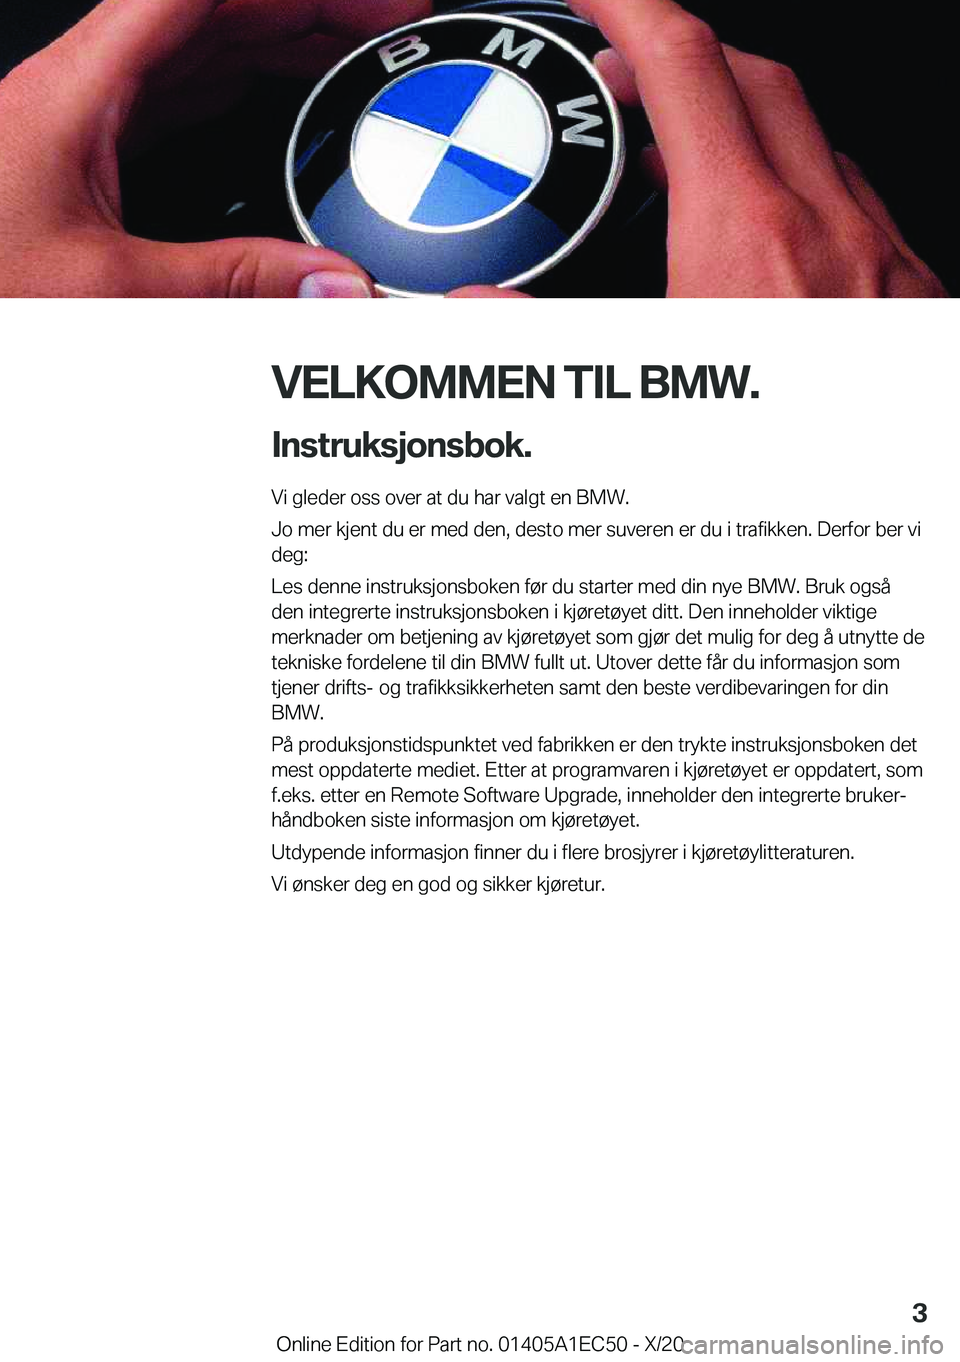 BMW 8 SERIES GRAN COUPE 2021  InstruksjonsbØker (in Norwegian) �V�E�L�K�O�M�M�E�N��T�I�L��B�M�W�.�I�n�s�t�r�u�k�s�j�o�n�s�b�o�k�.
�V�i��g�l�e�d�e�r��o�s�s��o�v�e�r��a�t��d�u��h�a�r��v�a�l�g�t��e�n��B�M�W�.
�J�o��m�e�r��k�j�e�n�t��d�u��e�r��m�e�d�